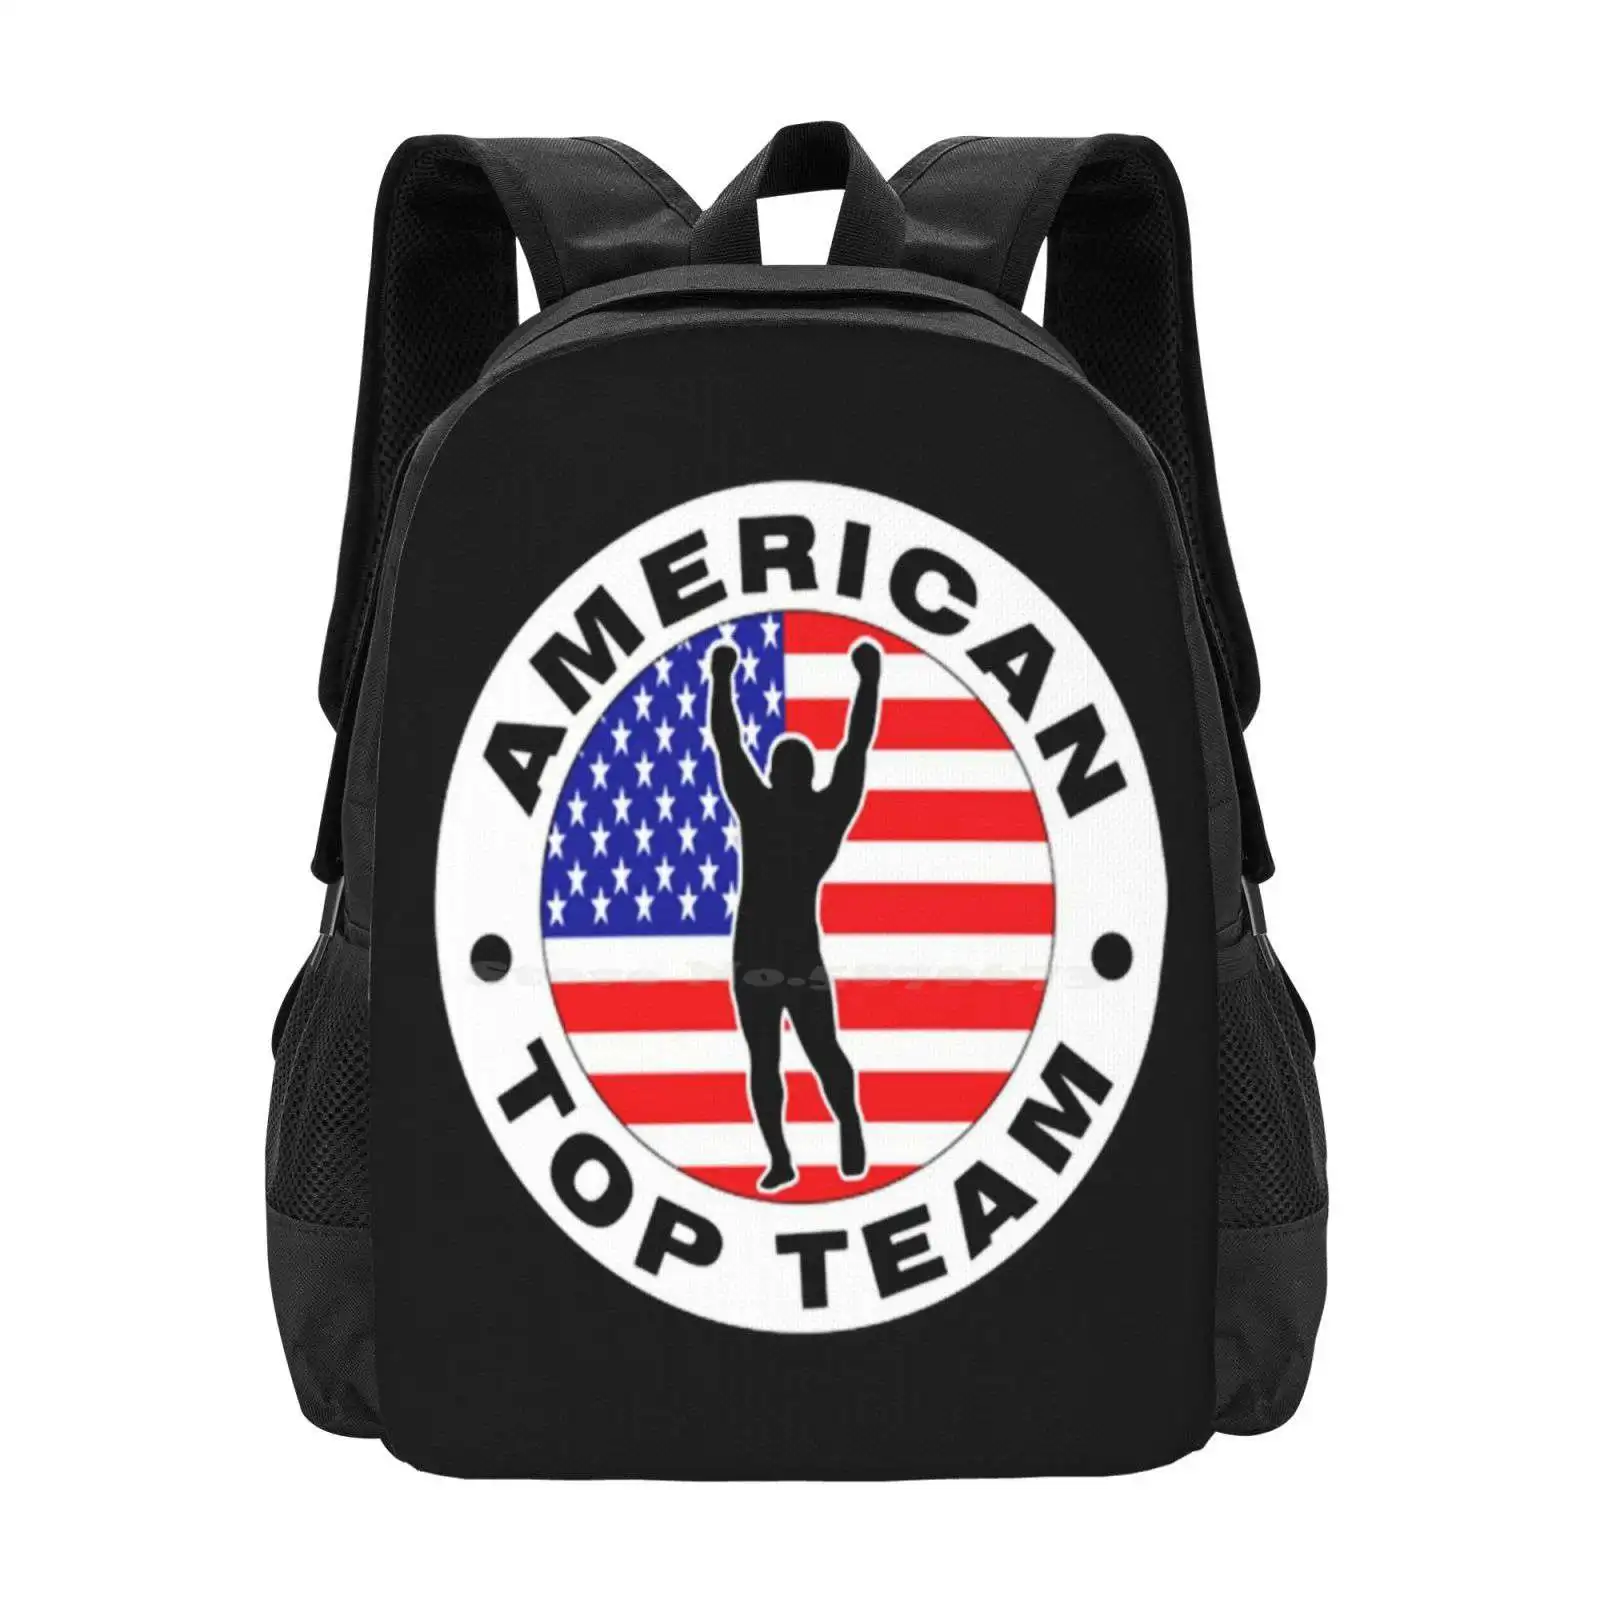 

American Top Team Jiu Jitsu Hot Sale Backpack Fashion Bags Bjj Brazilian Jiu Jitsu Mixed Martial Arts Fight Grappling Judo